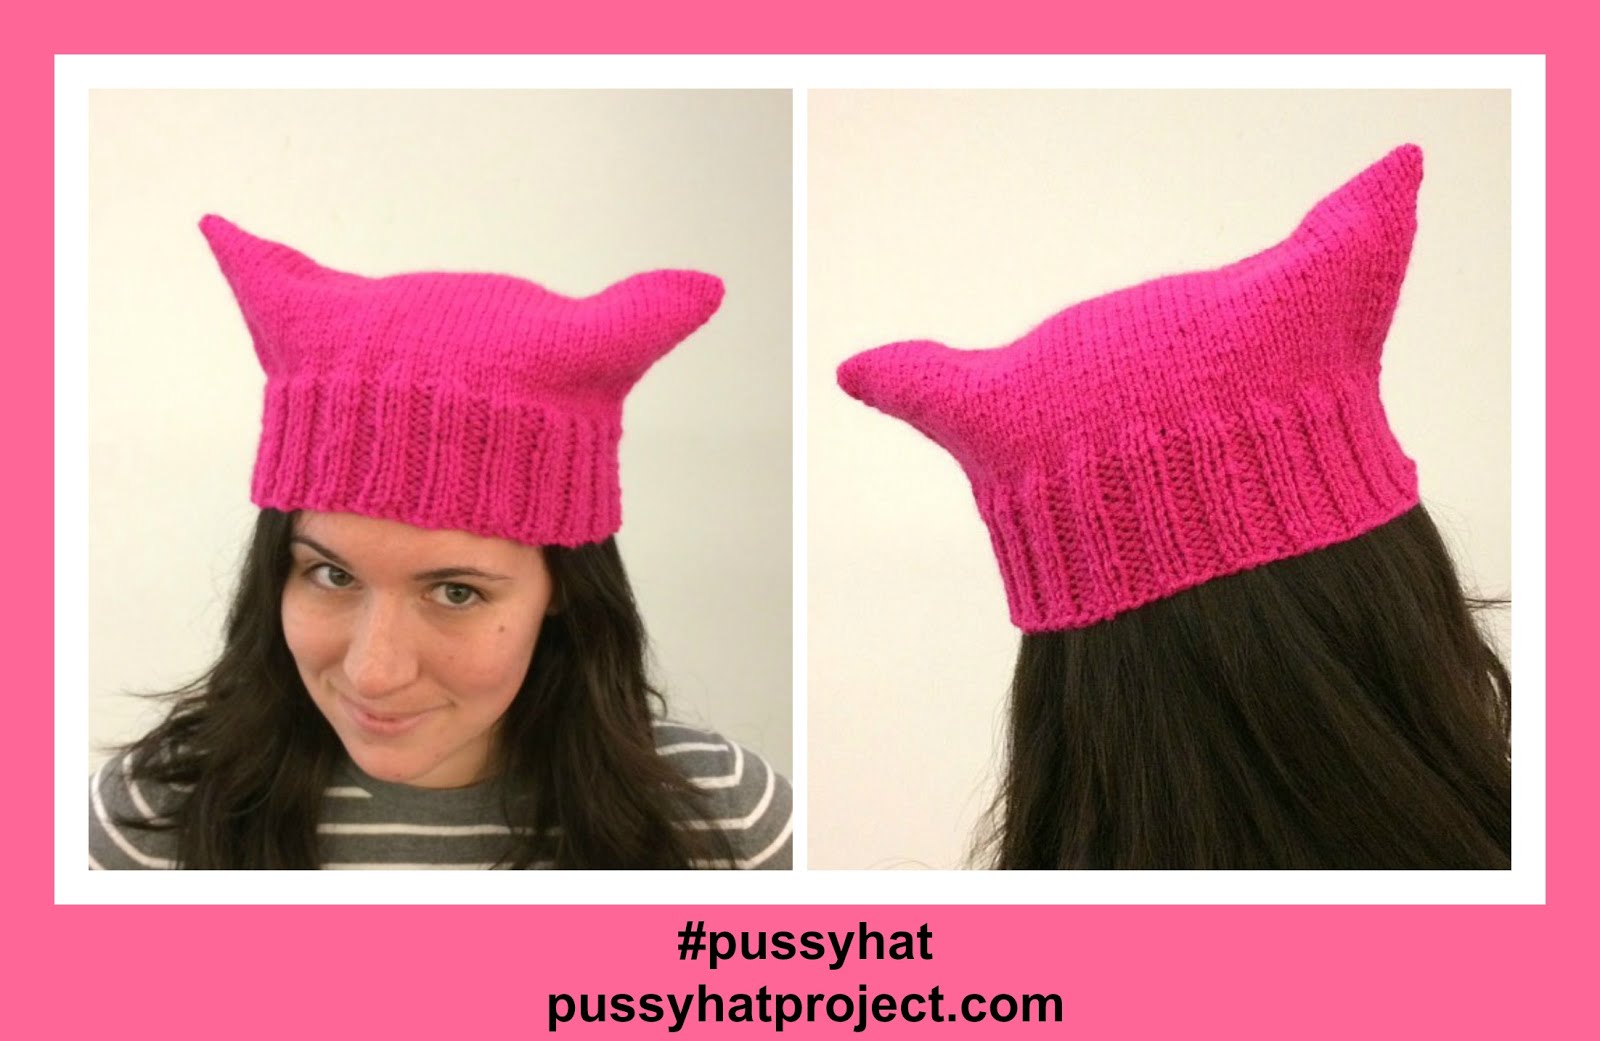 ピンク色のネコの耳の形をした毛糸で編まれた帽子